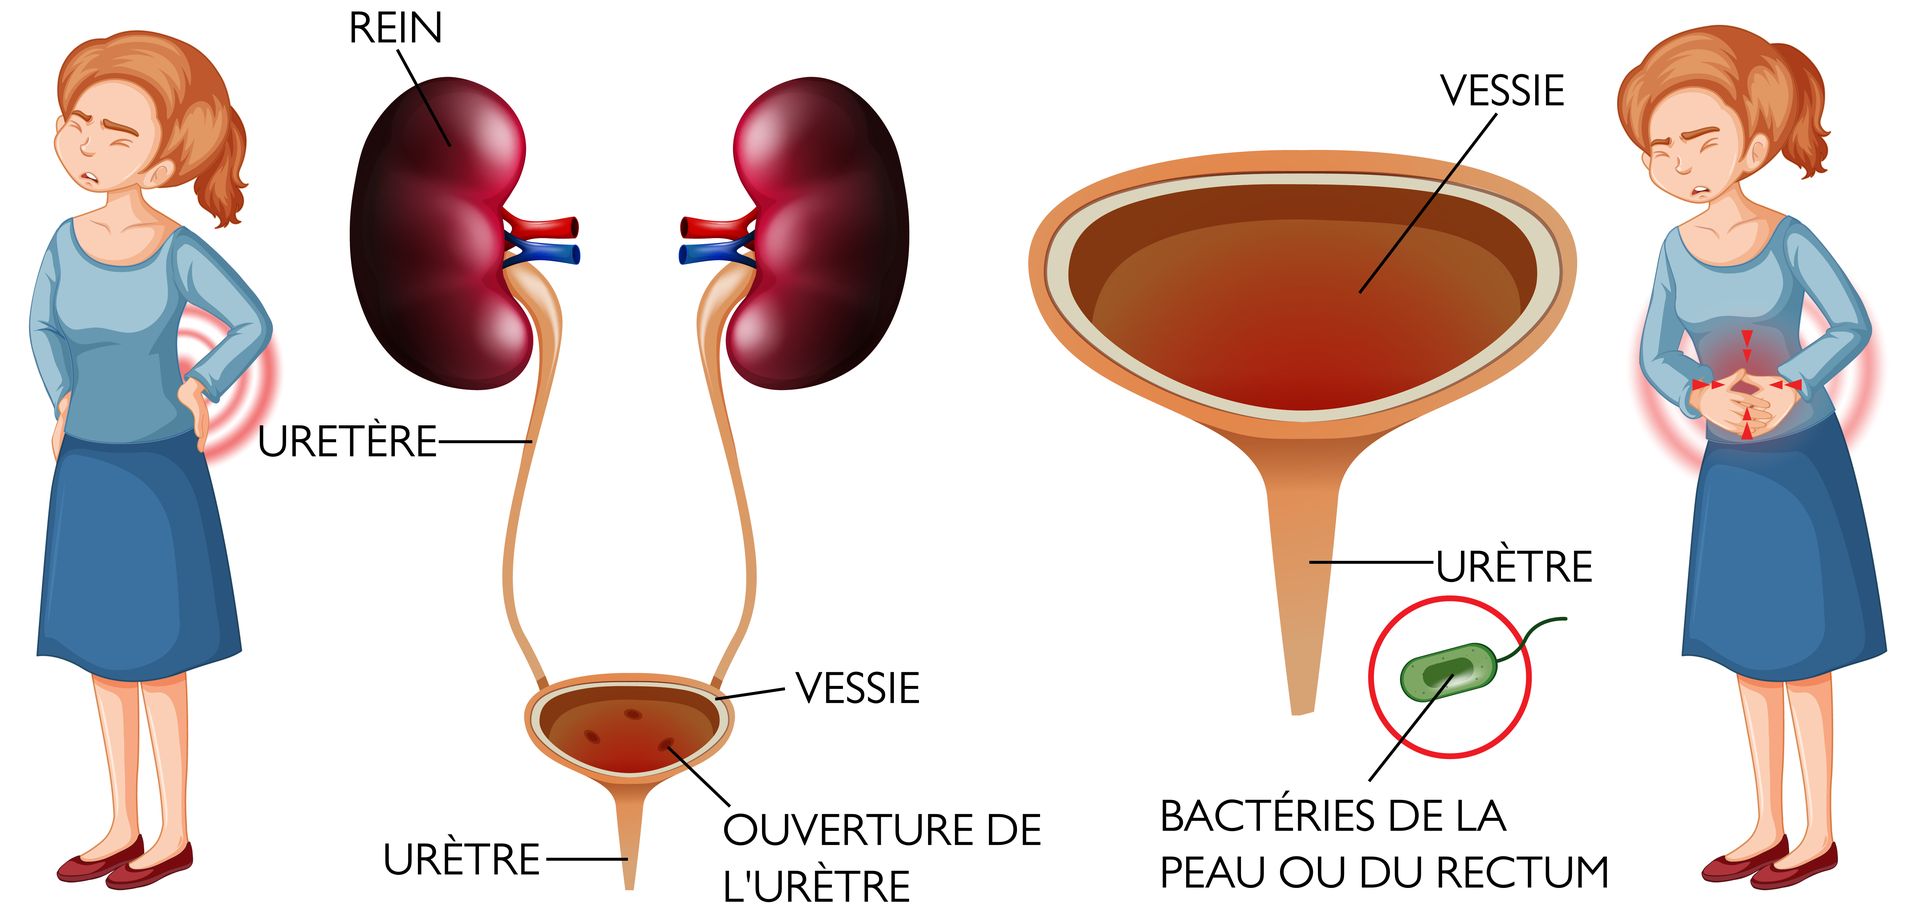 Cystite : Infection du système urinaire